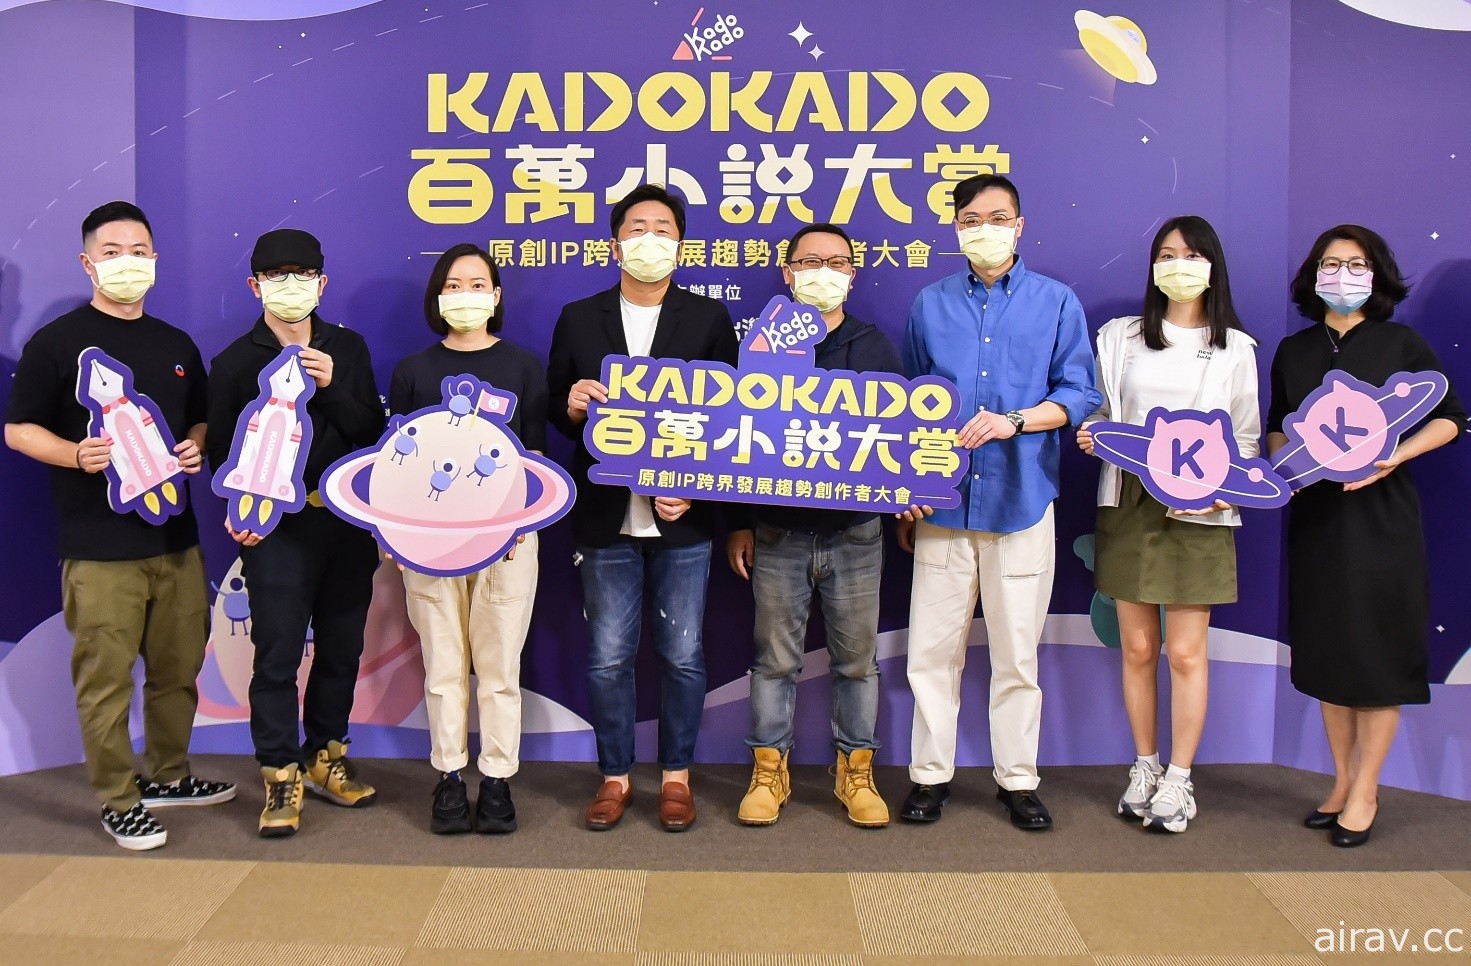 KadoKado 百万小说创作大赏 6 月起活动正式展开